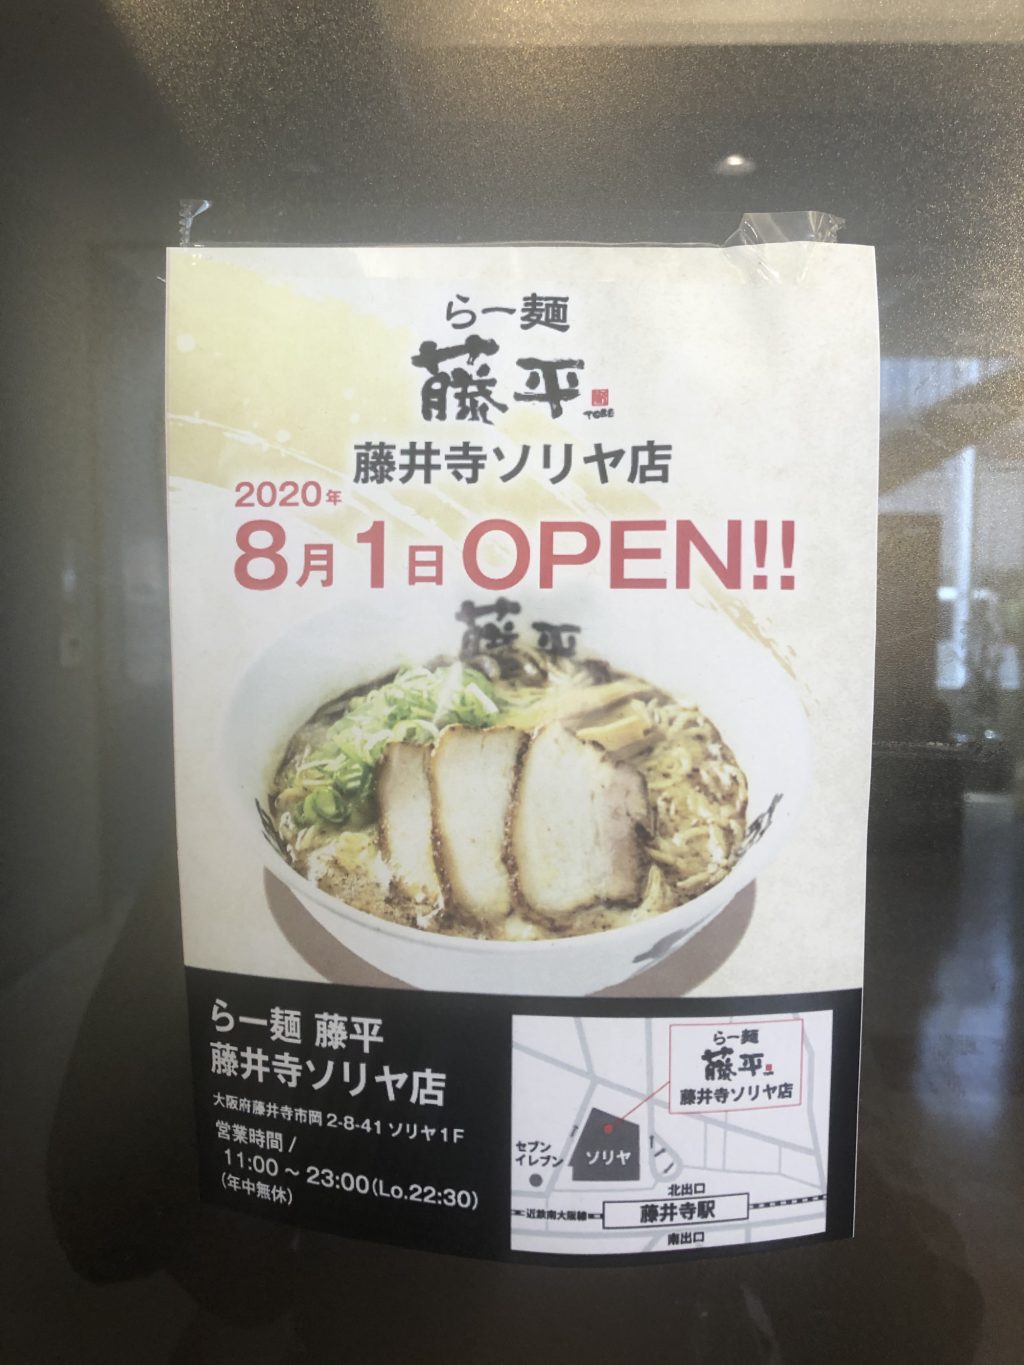 8 1オープン 浪速風味のとんこつラーメン らー麺 藤平 藤井寺ソリヤ店 がオープンしたよ さかにゅー